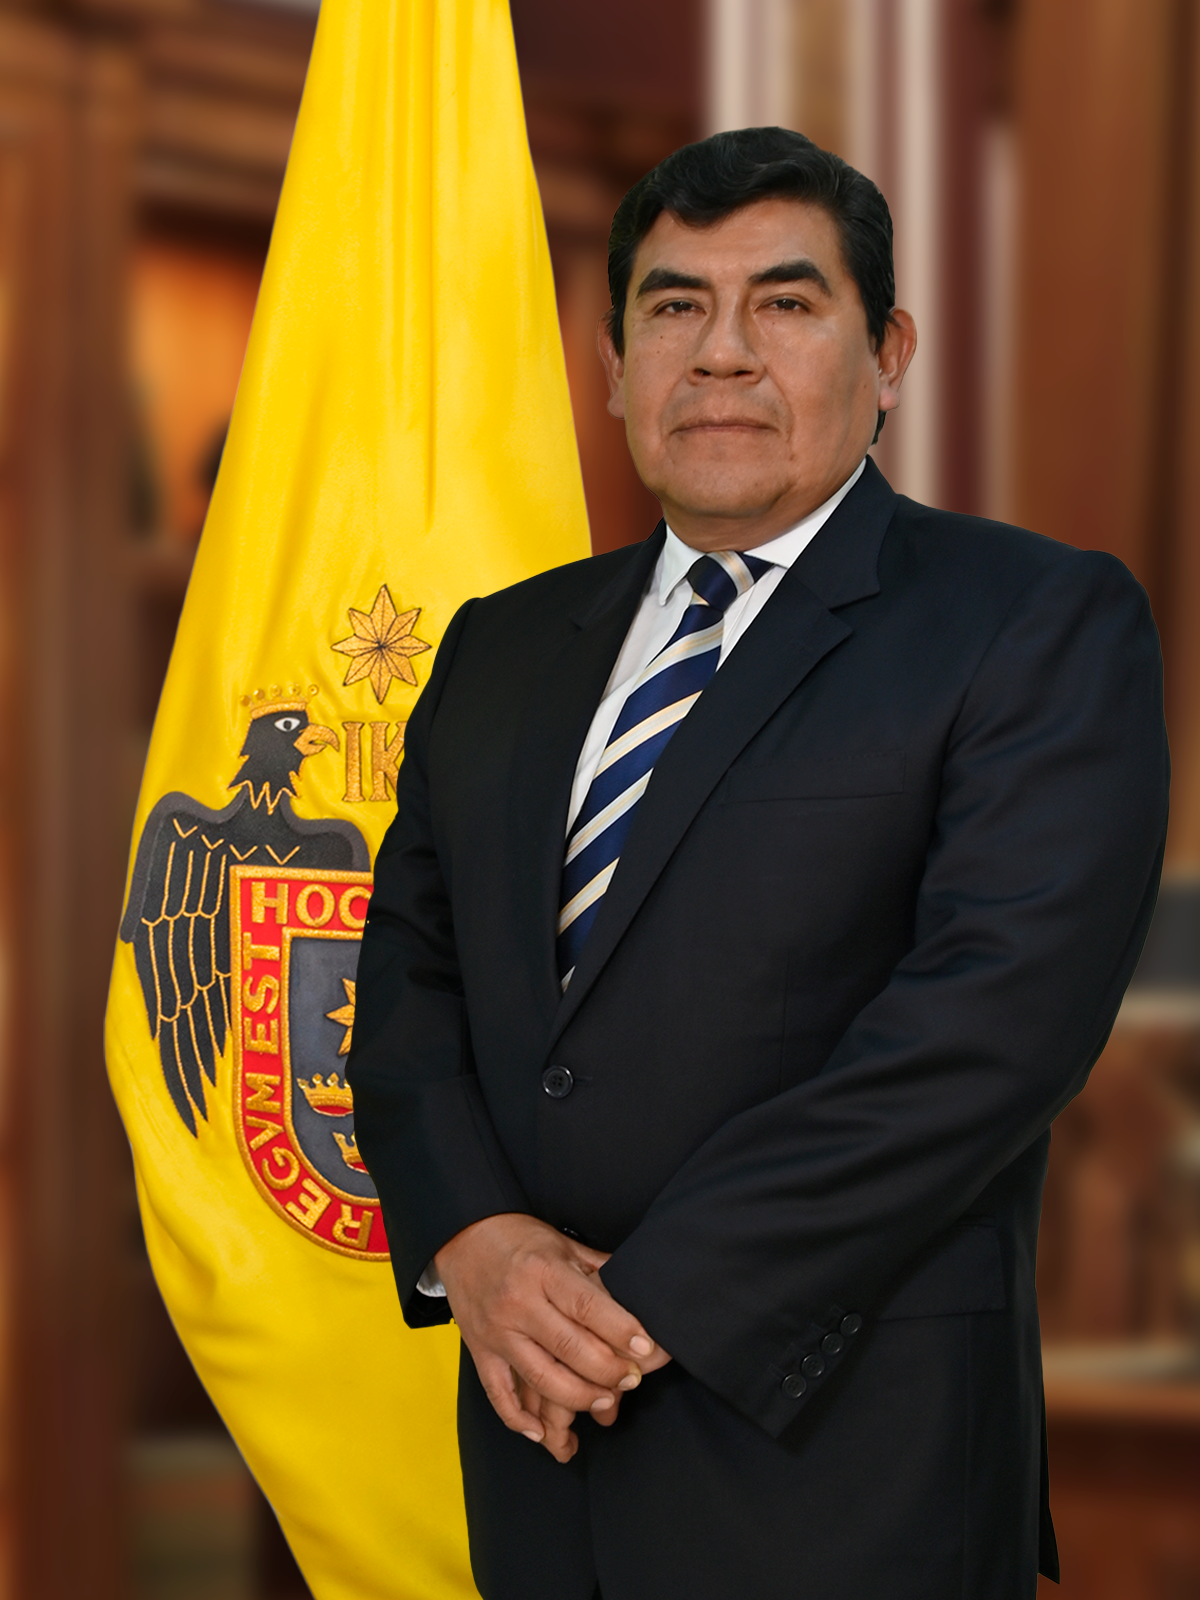 Frank Iván Penagos Díaz